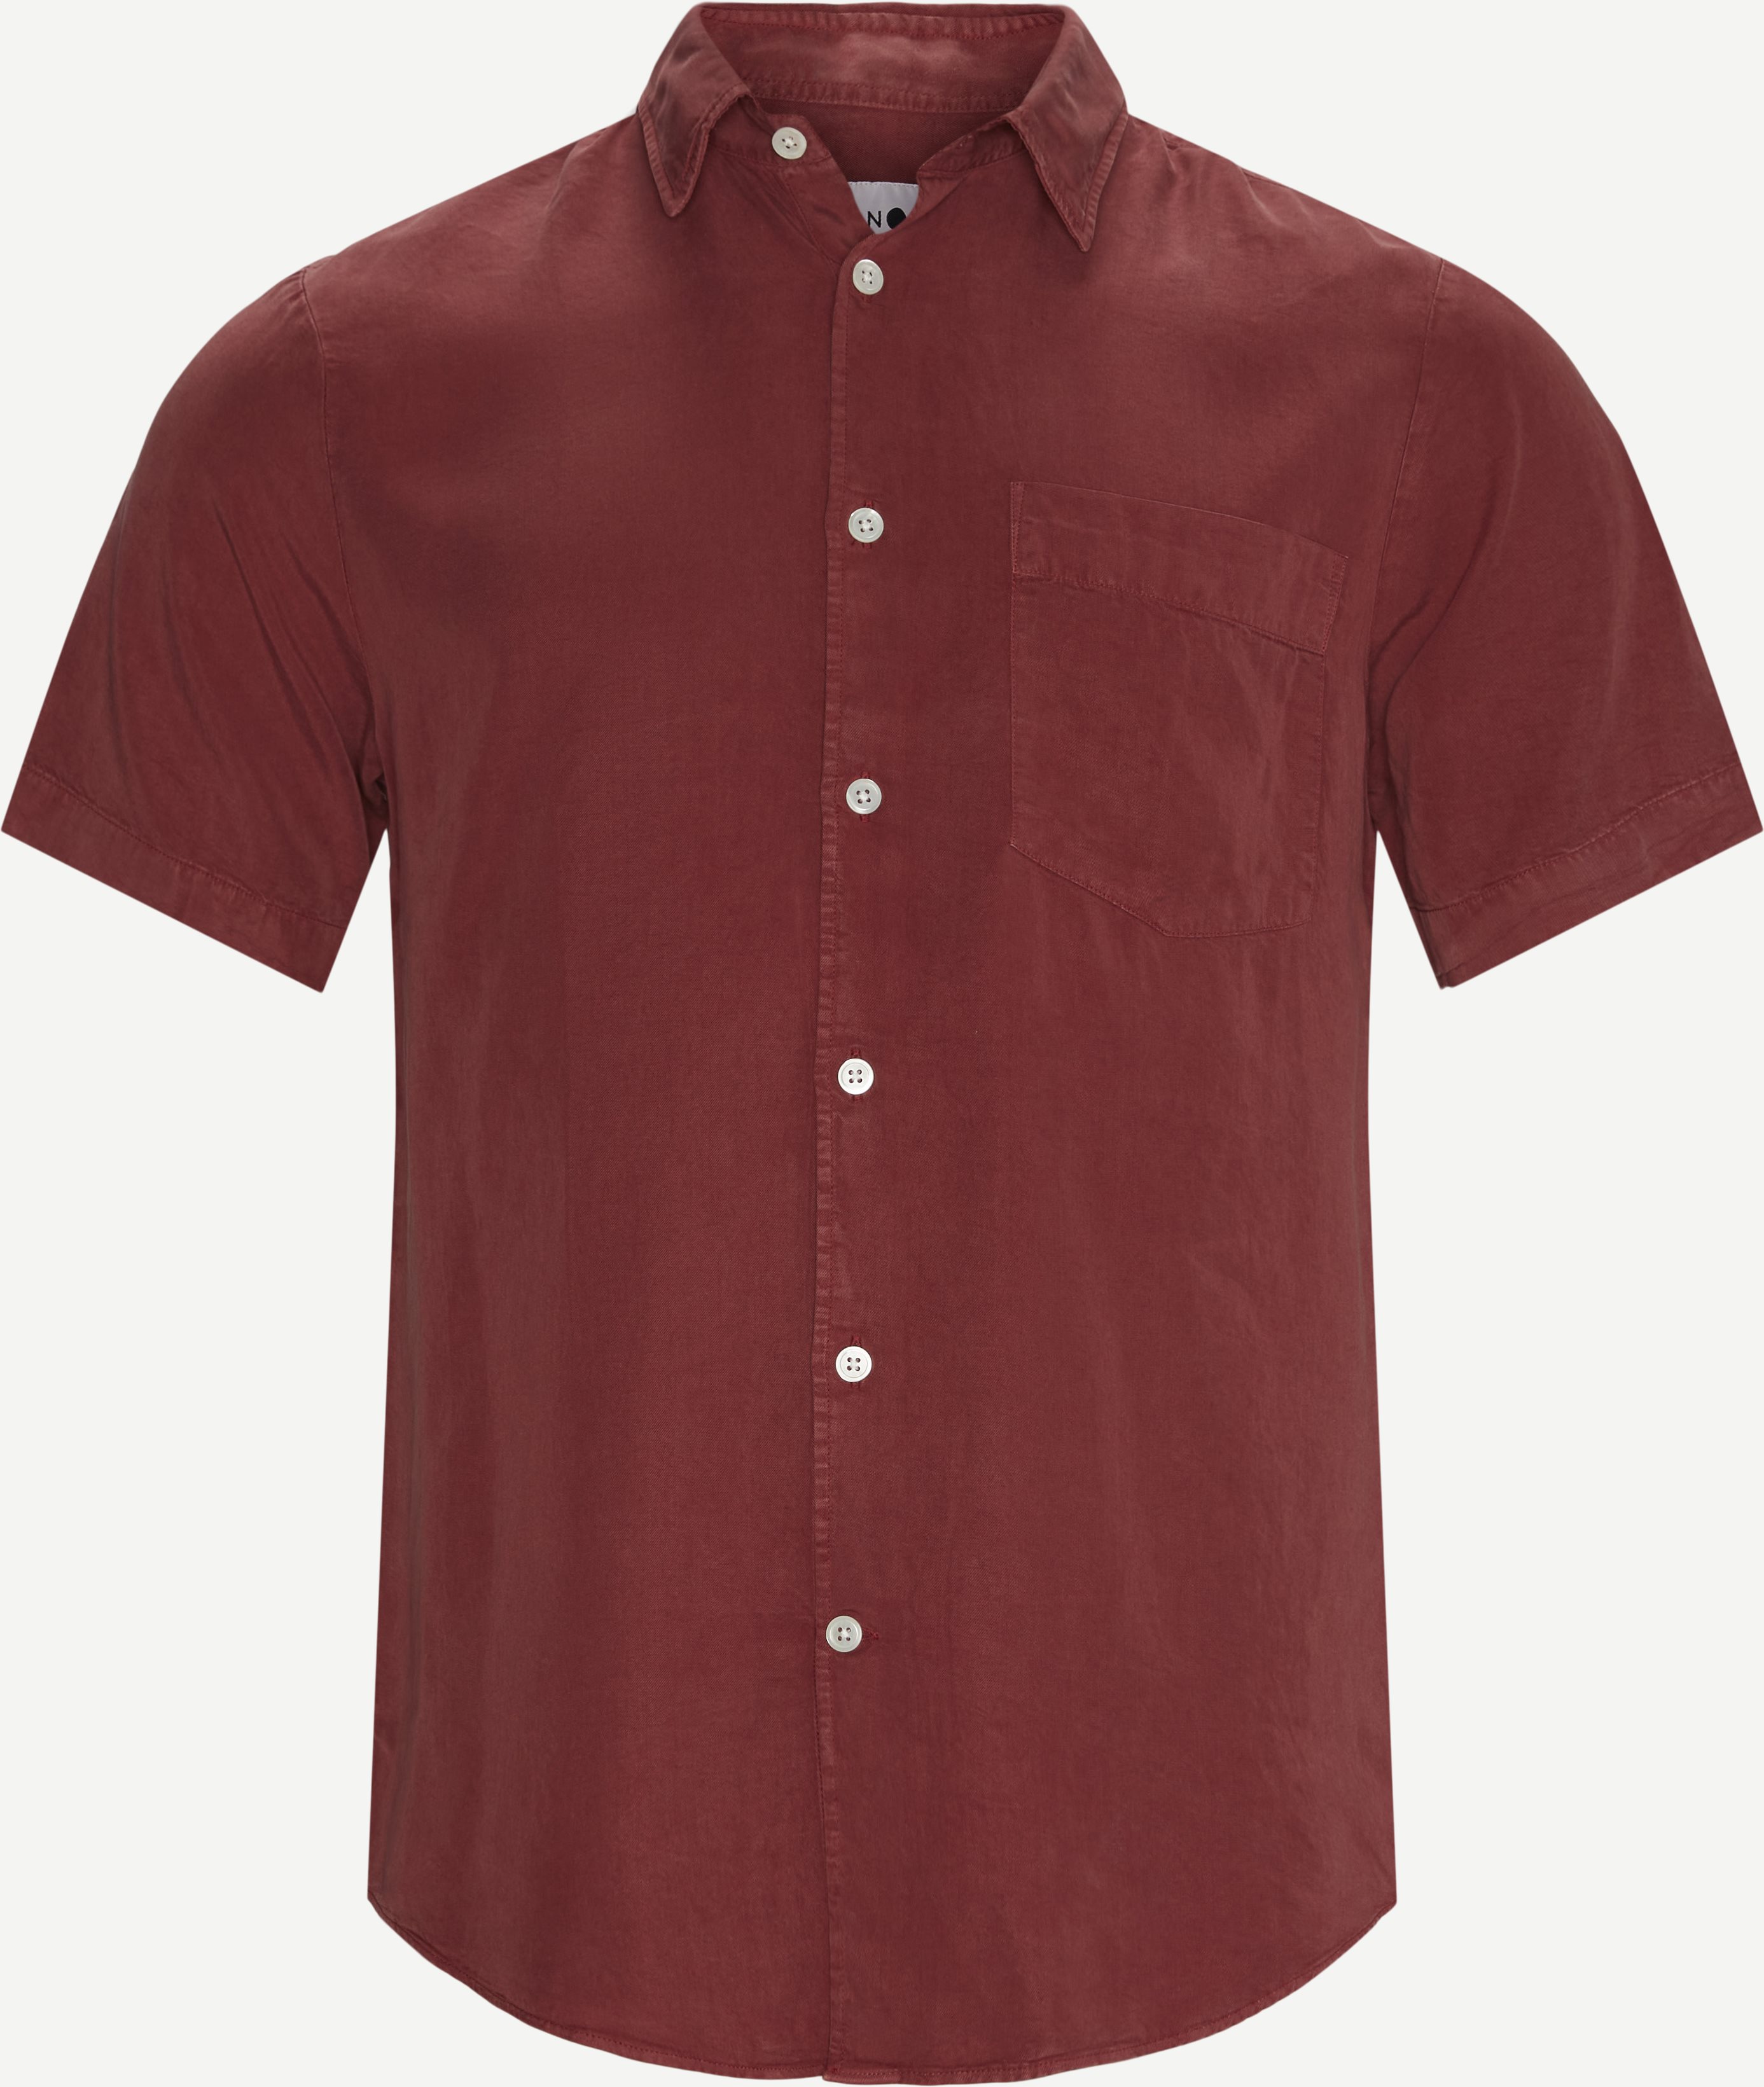 NN.07 Kortærmede skjorter ERRICO SS 5969 Rød